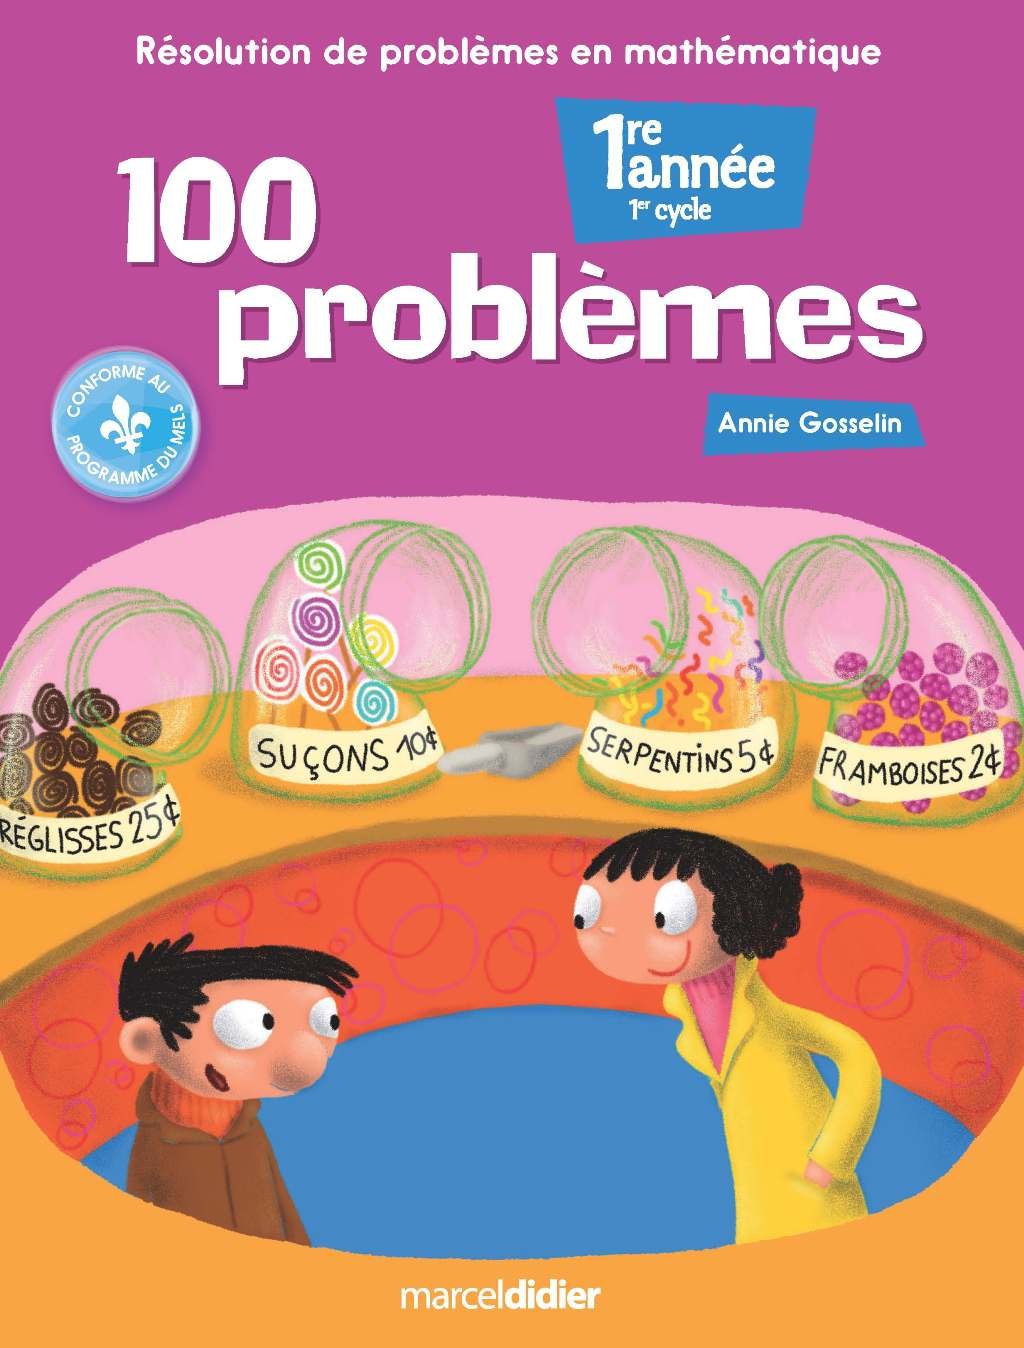 100 Problèmes: Résolution de problèmes en mathématique 1re année - Annie Gosselin